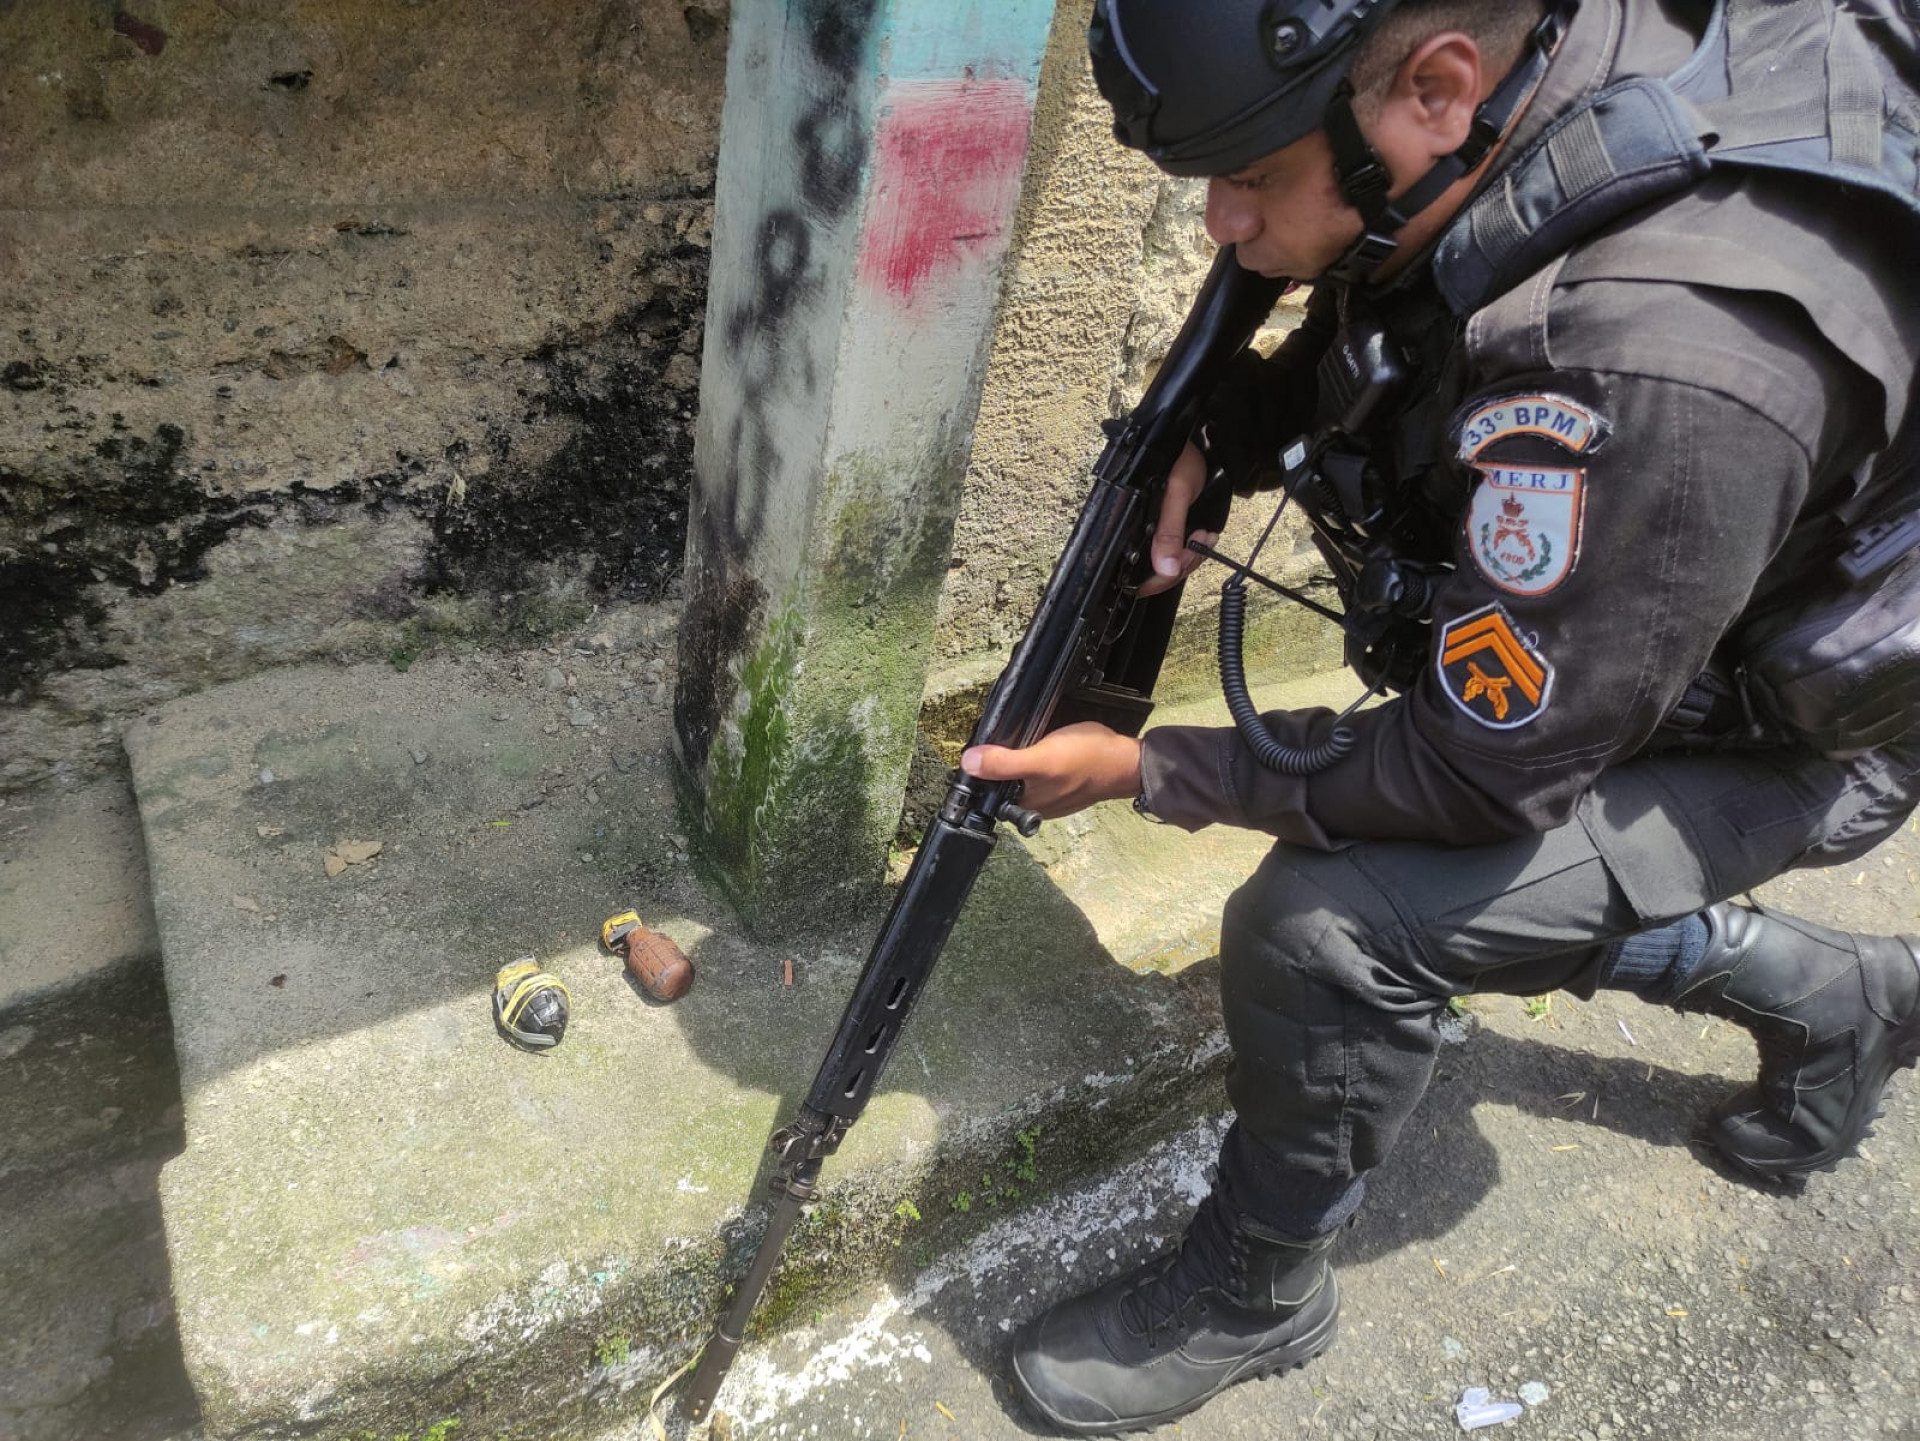 Suspeito após atirar contra os policiais fugiu para mata deixando para trás duas granadas - Divulgação/Disque Denúncia